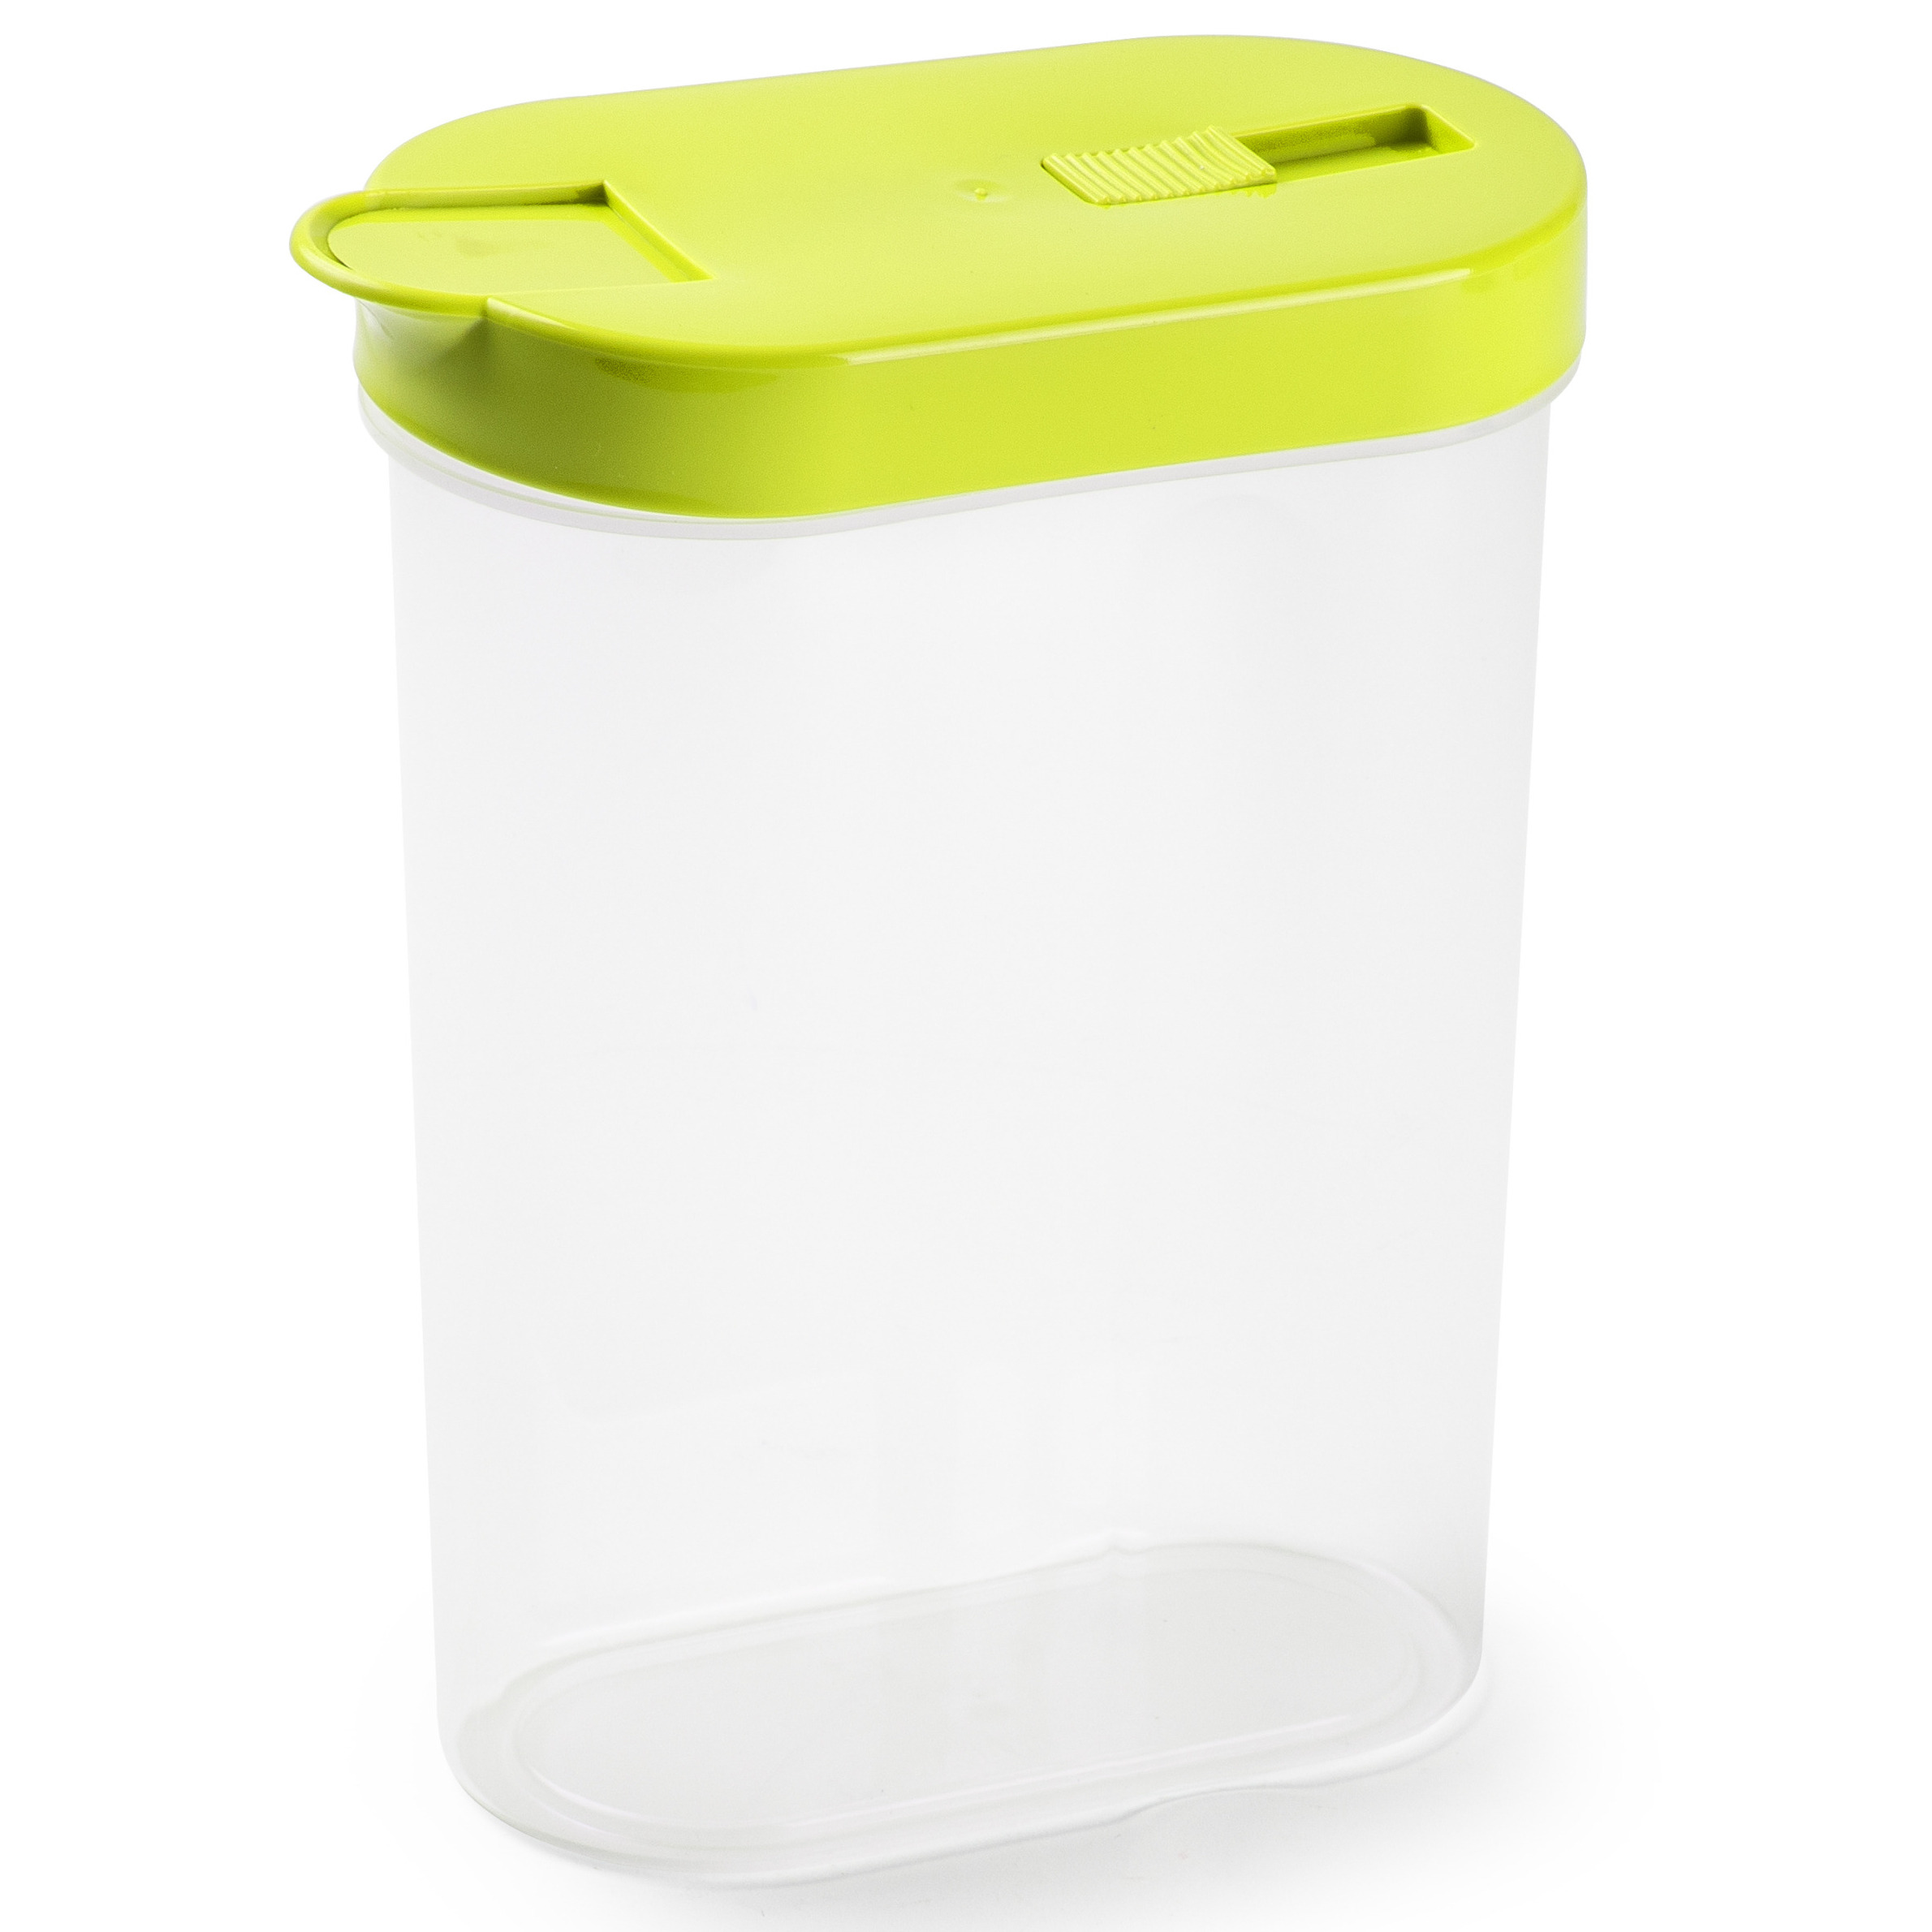 PlasticForte Voedselcontainer strooibus - groen - inhoud 1 liter - kunststof - 15 x 7 x 19 cm -